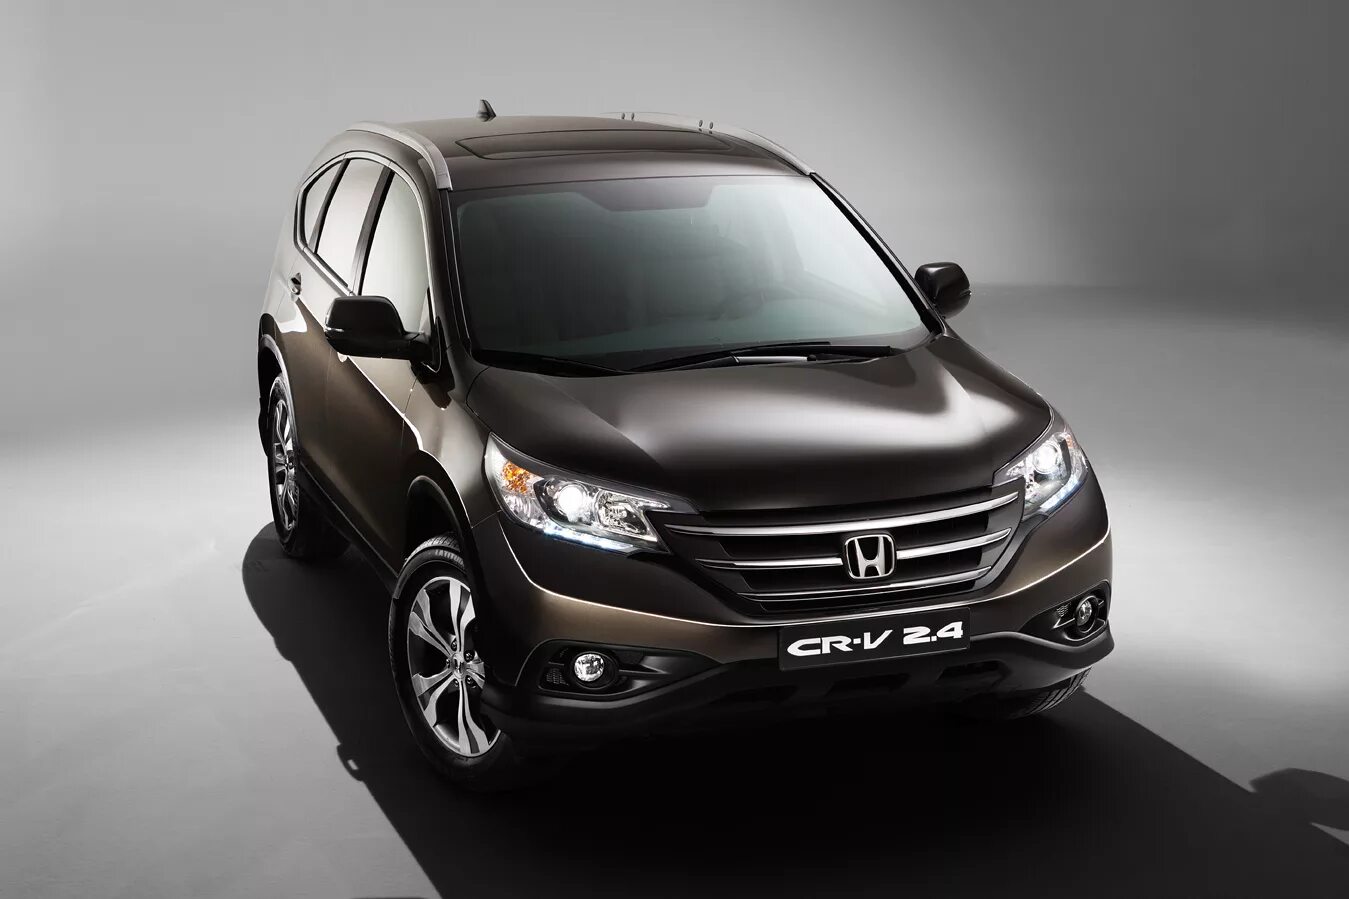 Honda CR-V 2013. Honda CR-V 4 2013. Honda CRV 2013 2.4. Honda CRV 4 поколение. Купить хонду срв автомат